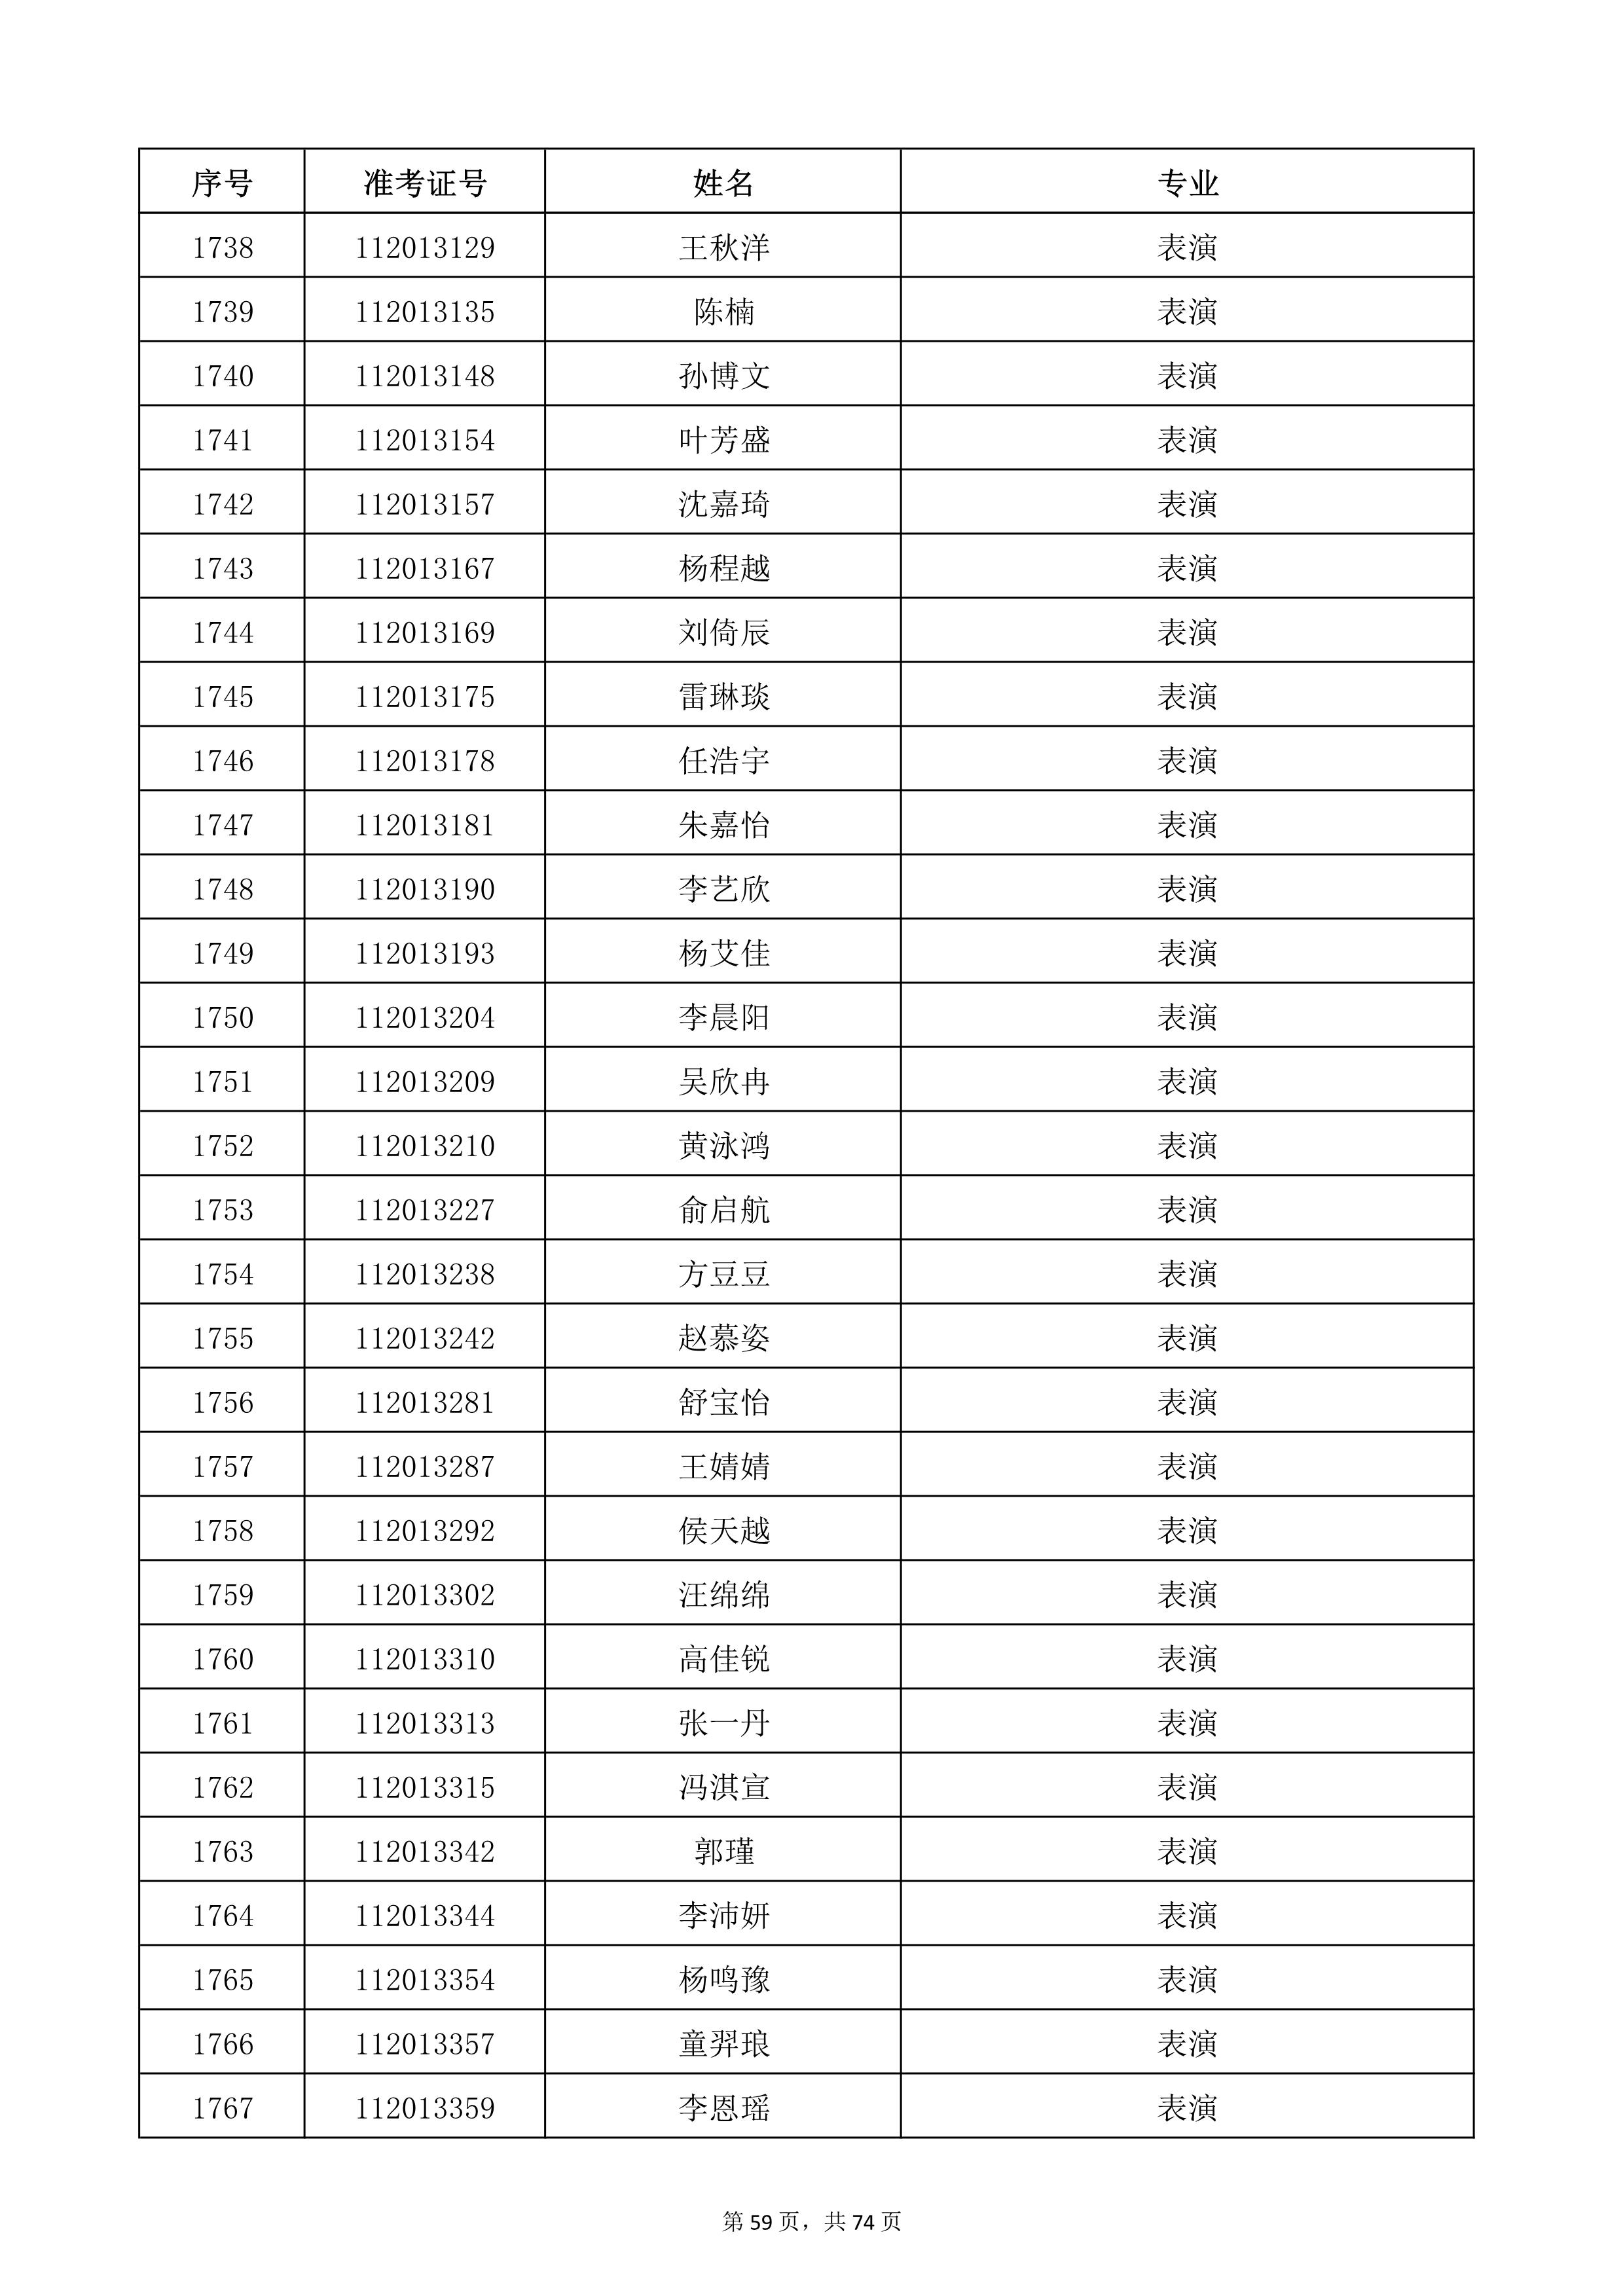 天津音乐学院2022年本科招生考试复试名单_59.jpg